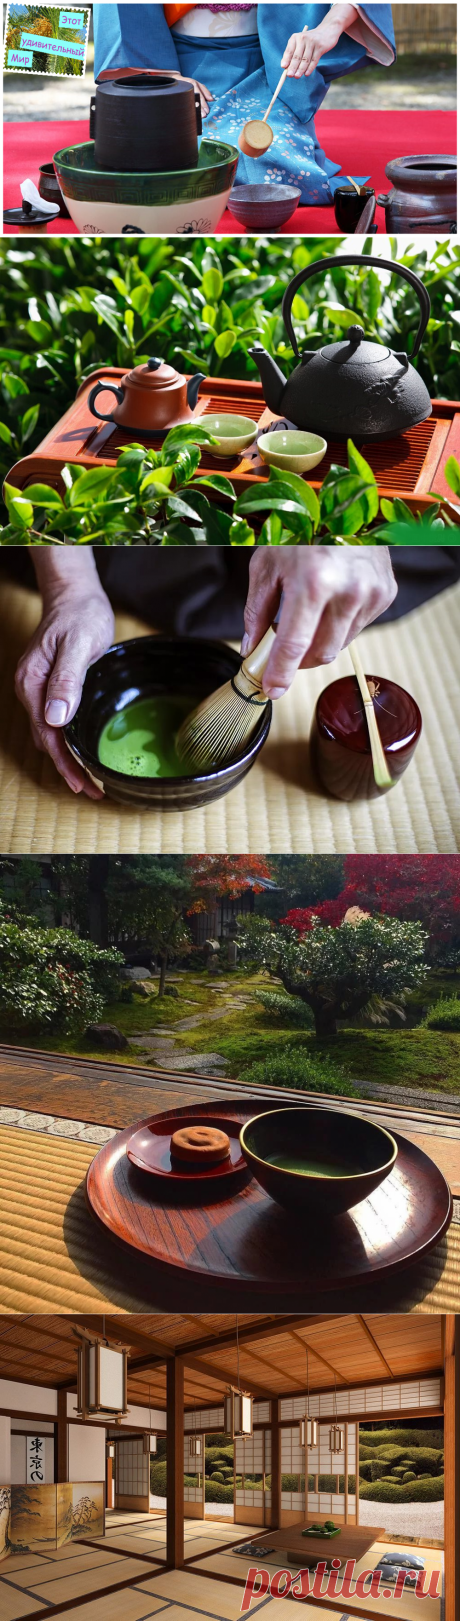 Японская чайная церемония. Правила чайной церемонии. И что считается невежливым?